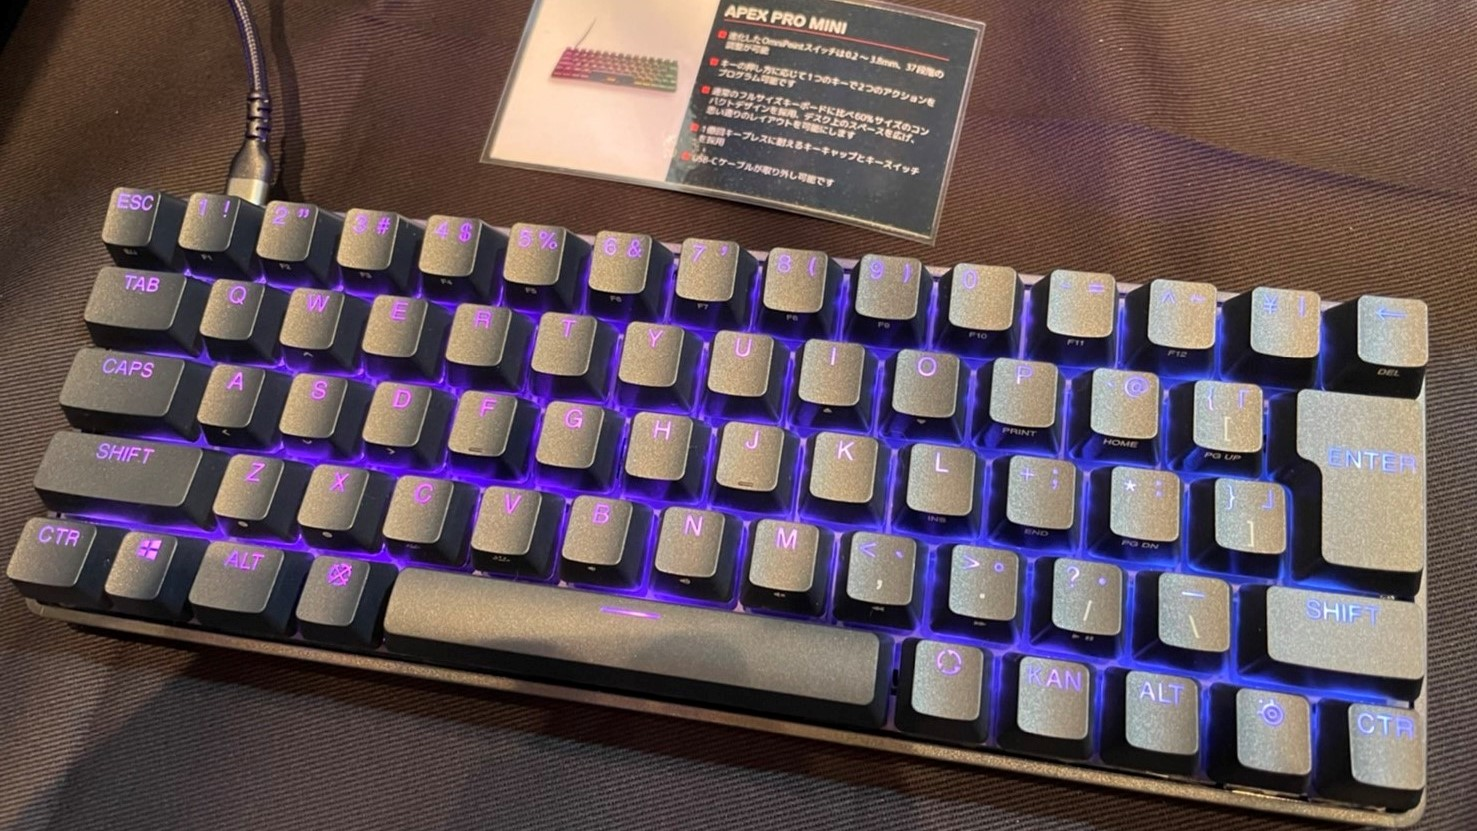 steelseries Apex pro mini wireless keyboard